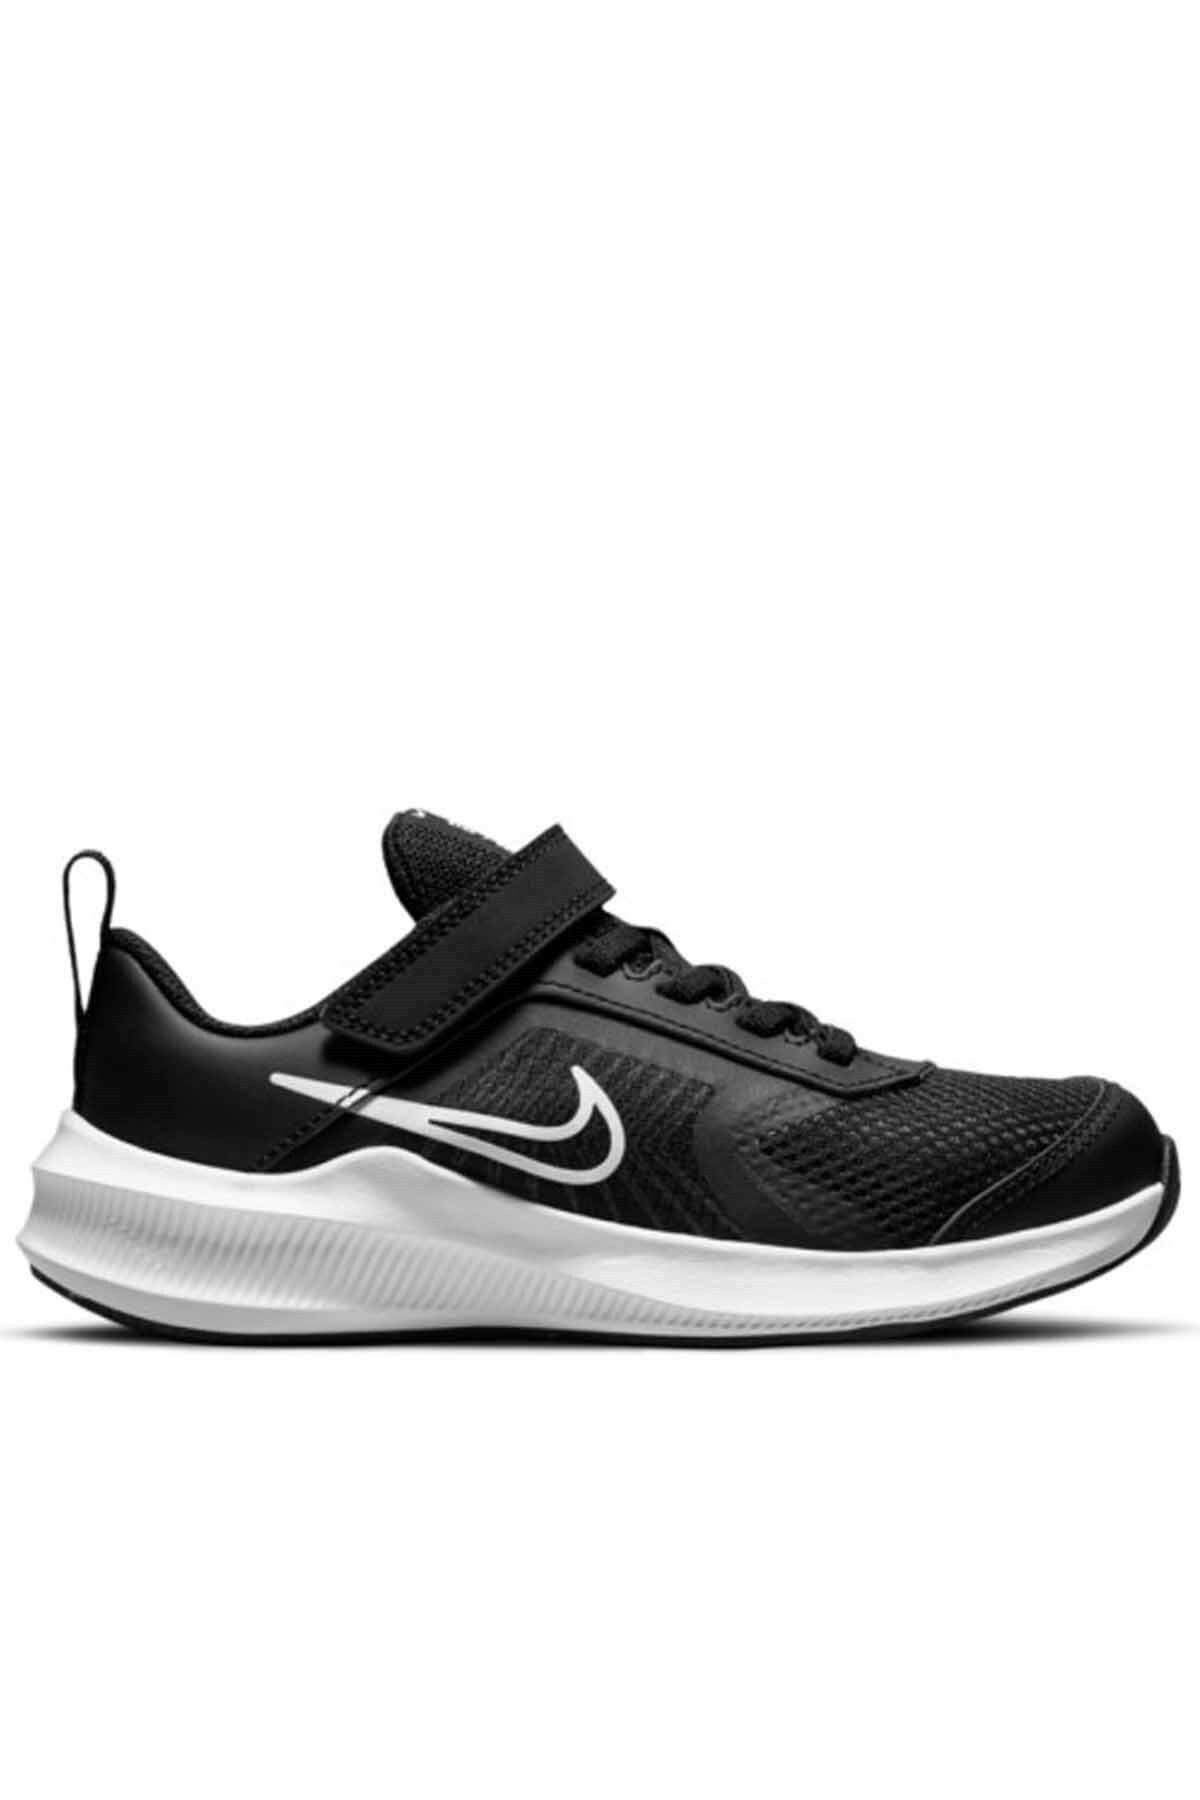 Nike Downshifter 11 (PSV) Çocuk Yürüyüş Koşu Ayakkabı Cz3959-001-siyah